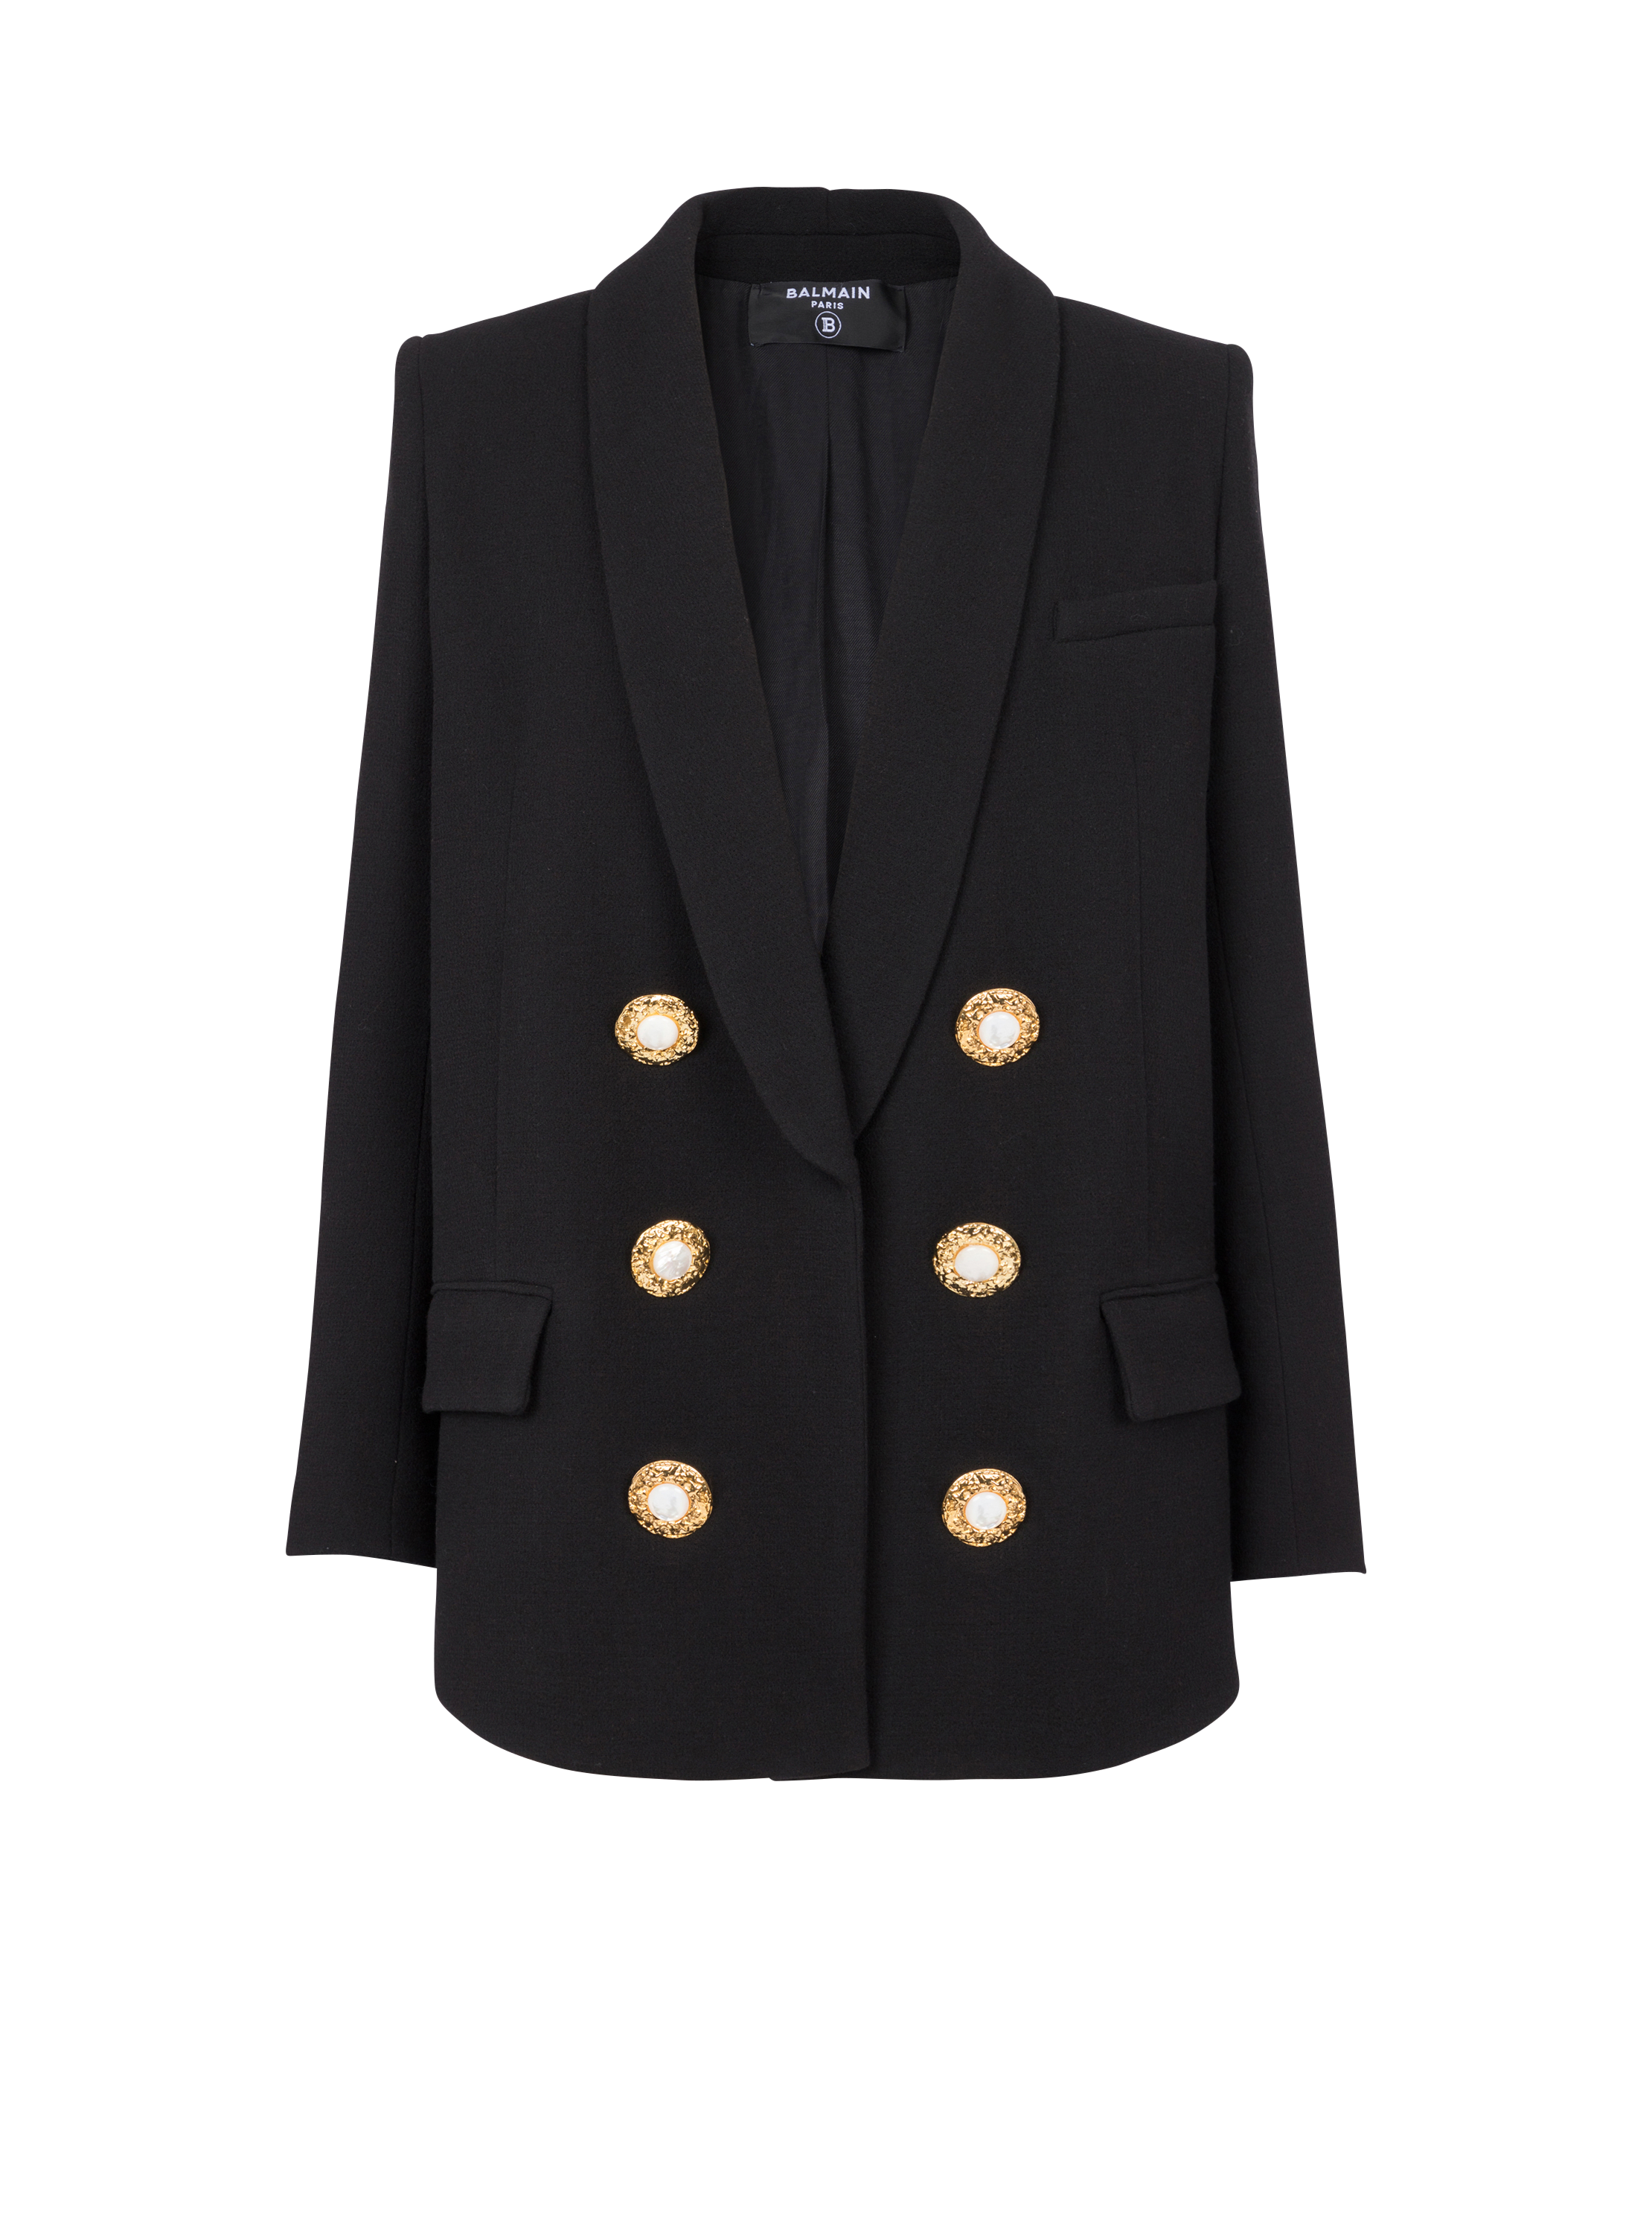 Jacke aus Crêpe mit Schalkragen, schwarz, hi-res